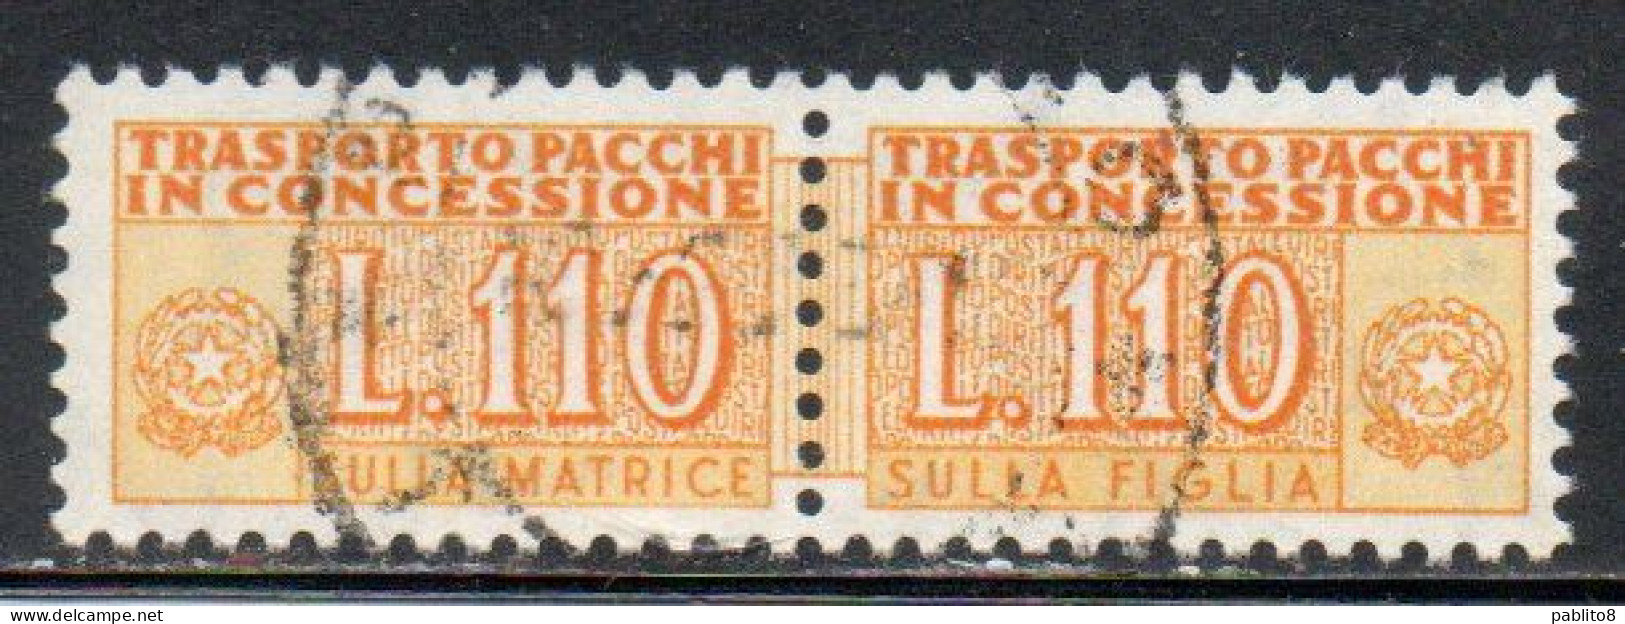 ITALIA REPUBBLICA ITALY REPUBLIC 1955 1981 PACCHI IN CONCESSIONE PARCEL POST STELLE STARS 1960 LIRE 110 USATO USED OBLIT - Consigned Parcels